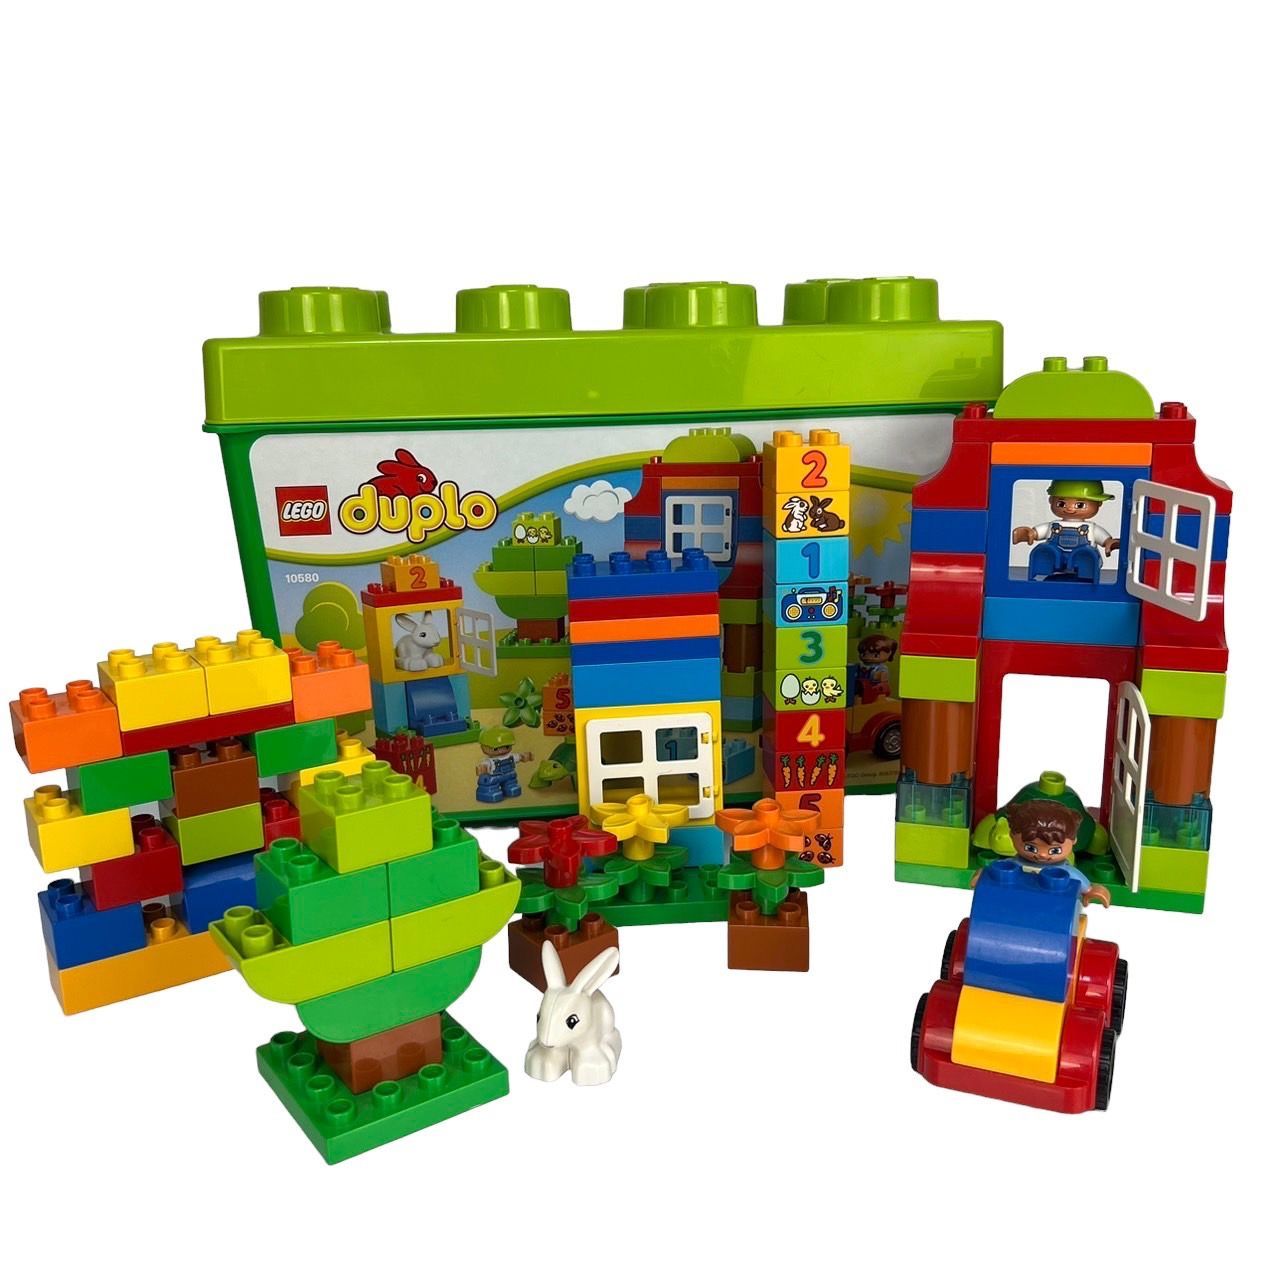 激レア☆廃盤レゴ デュプロ たのしいお家 基盤38×38センチ付き - 知育玩具